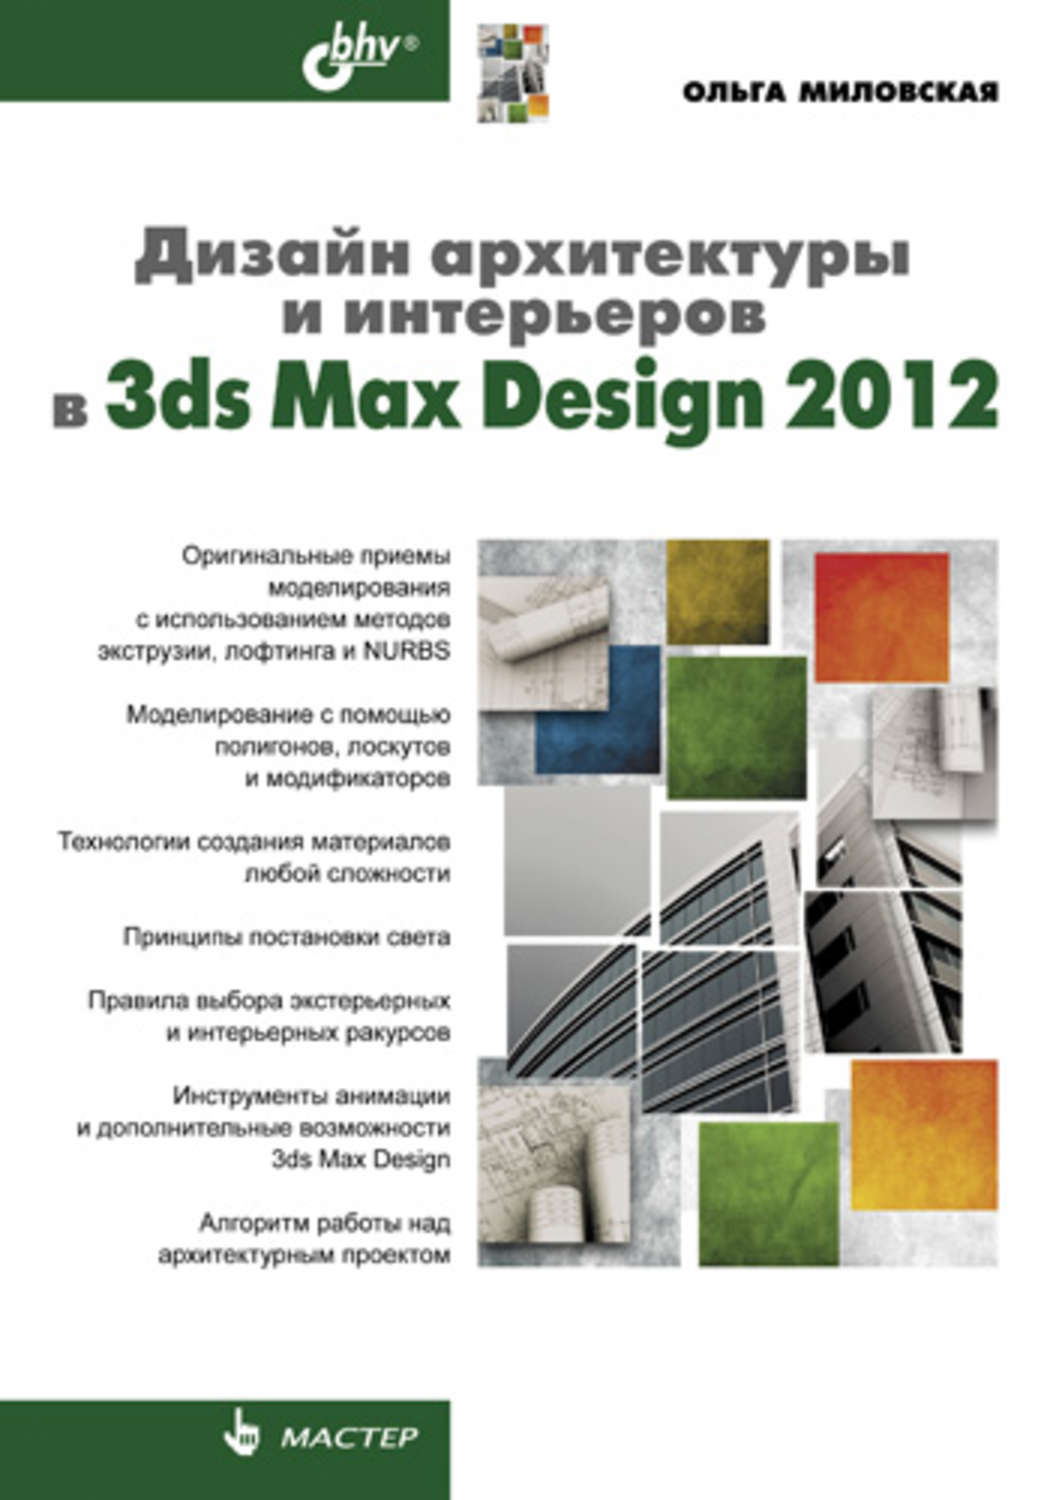 Дизайн архитектуры и интерьеров в 3ds Max Design 2012. Миловская о. с.